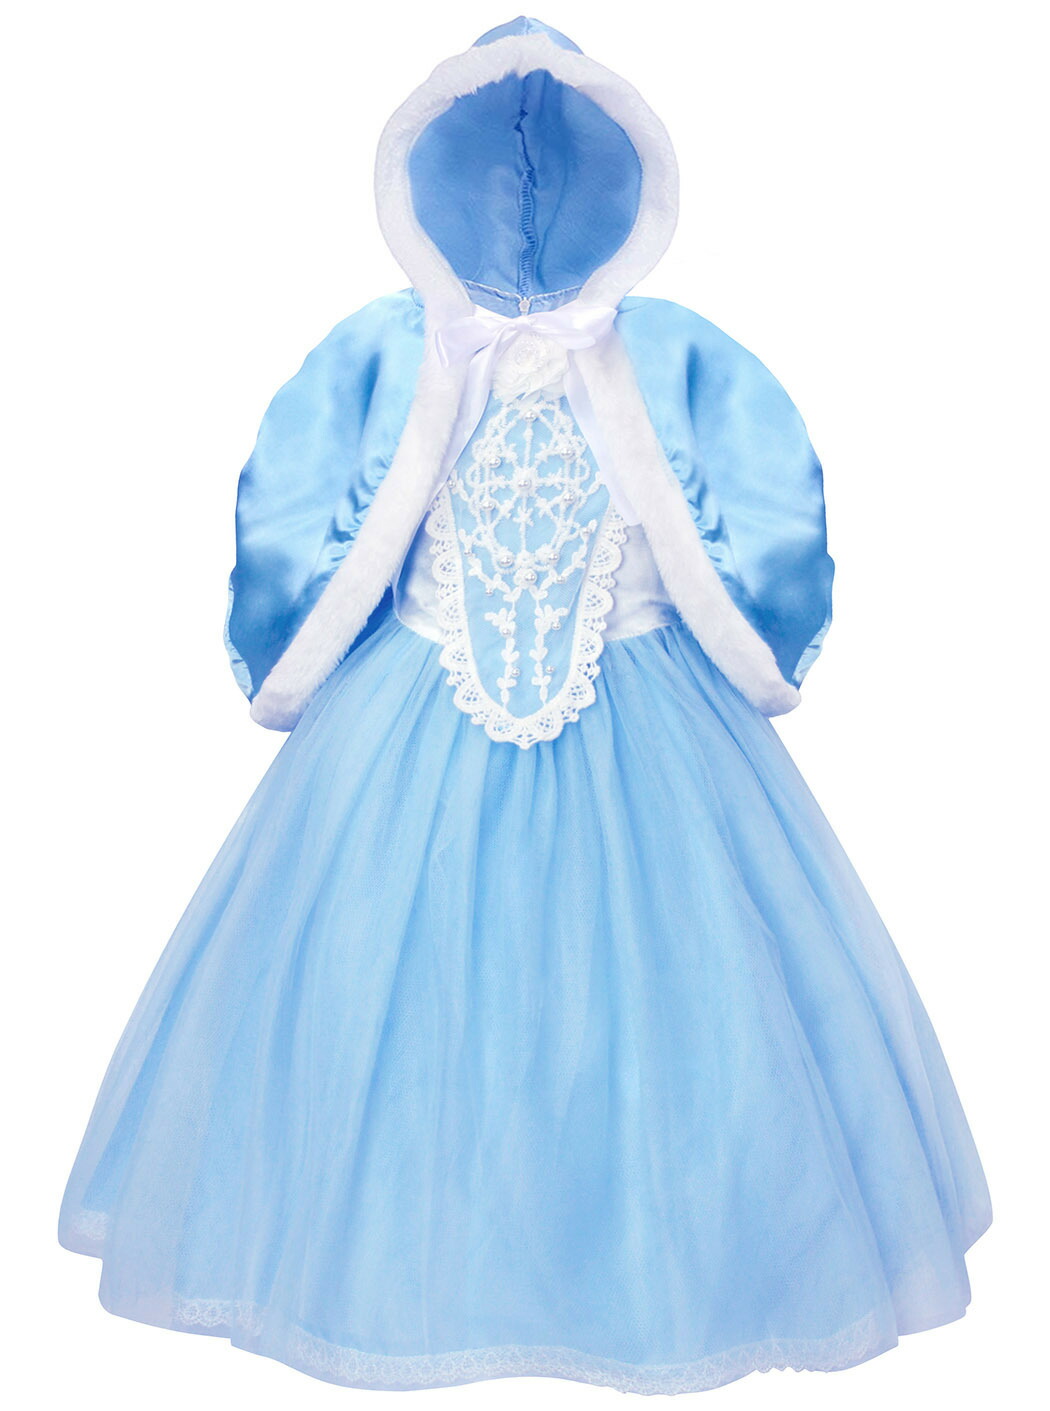 プリンセス ドレス 子供 仮装 女の子 コスチューム 衣装 コスプレ プレゼント リトルプリンセス ブルー お姫様 096